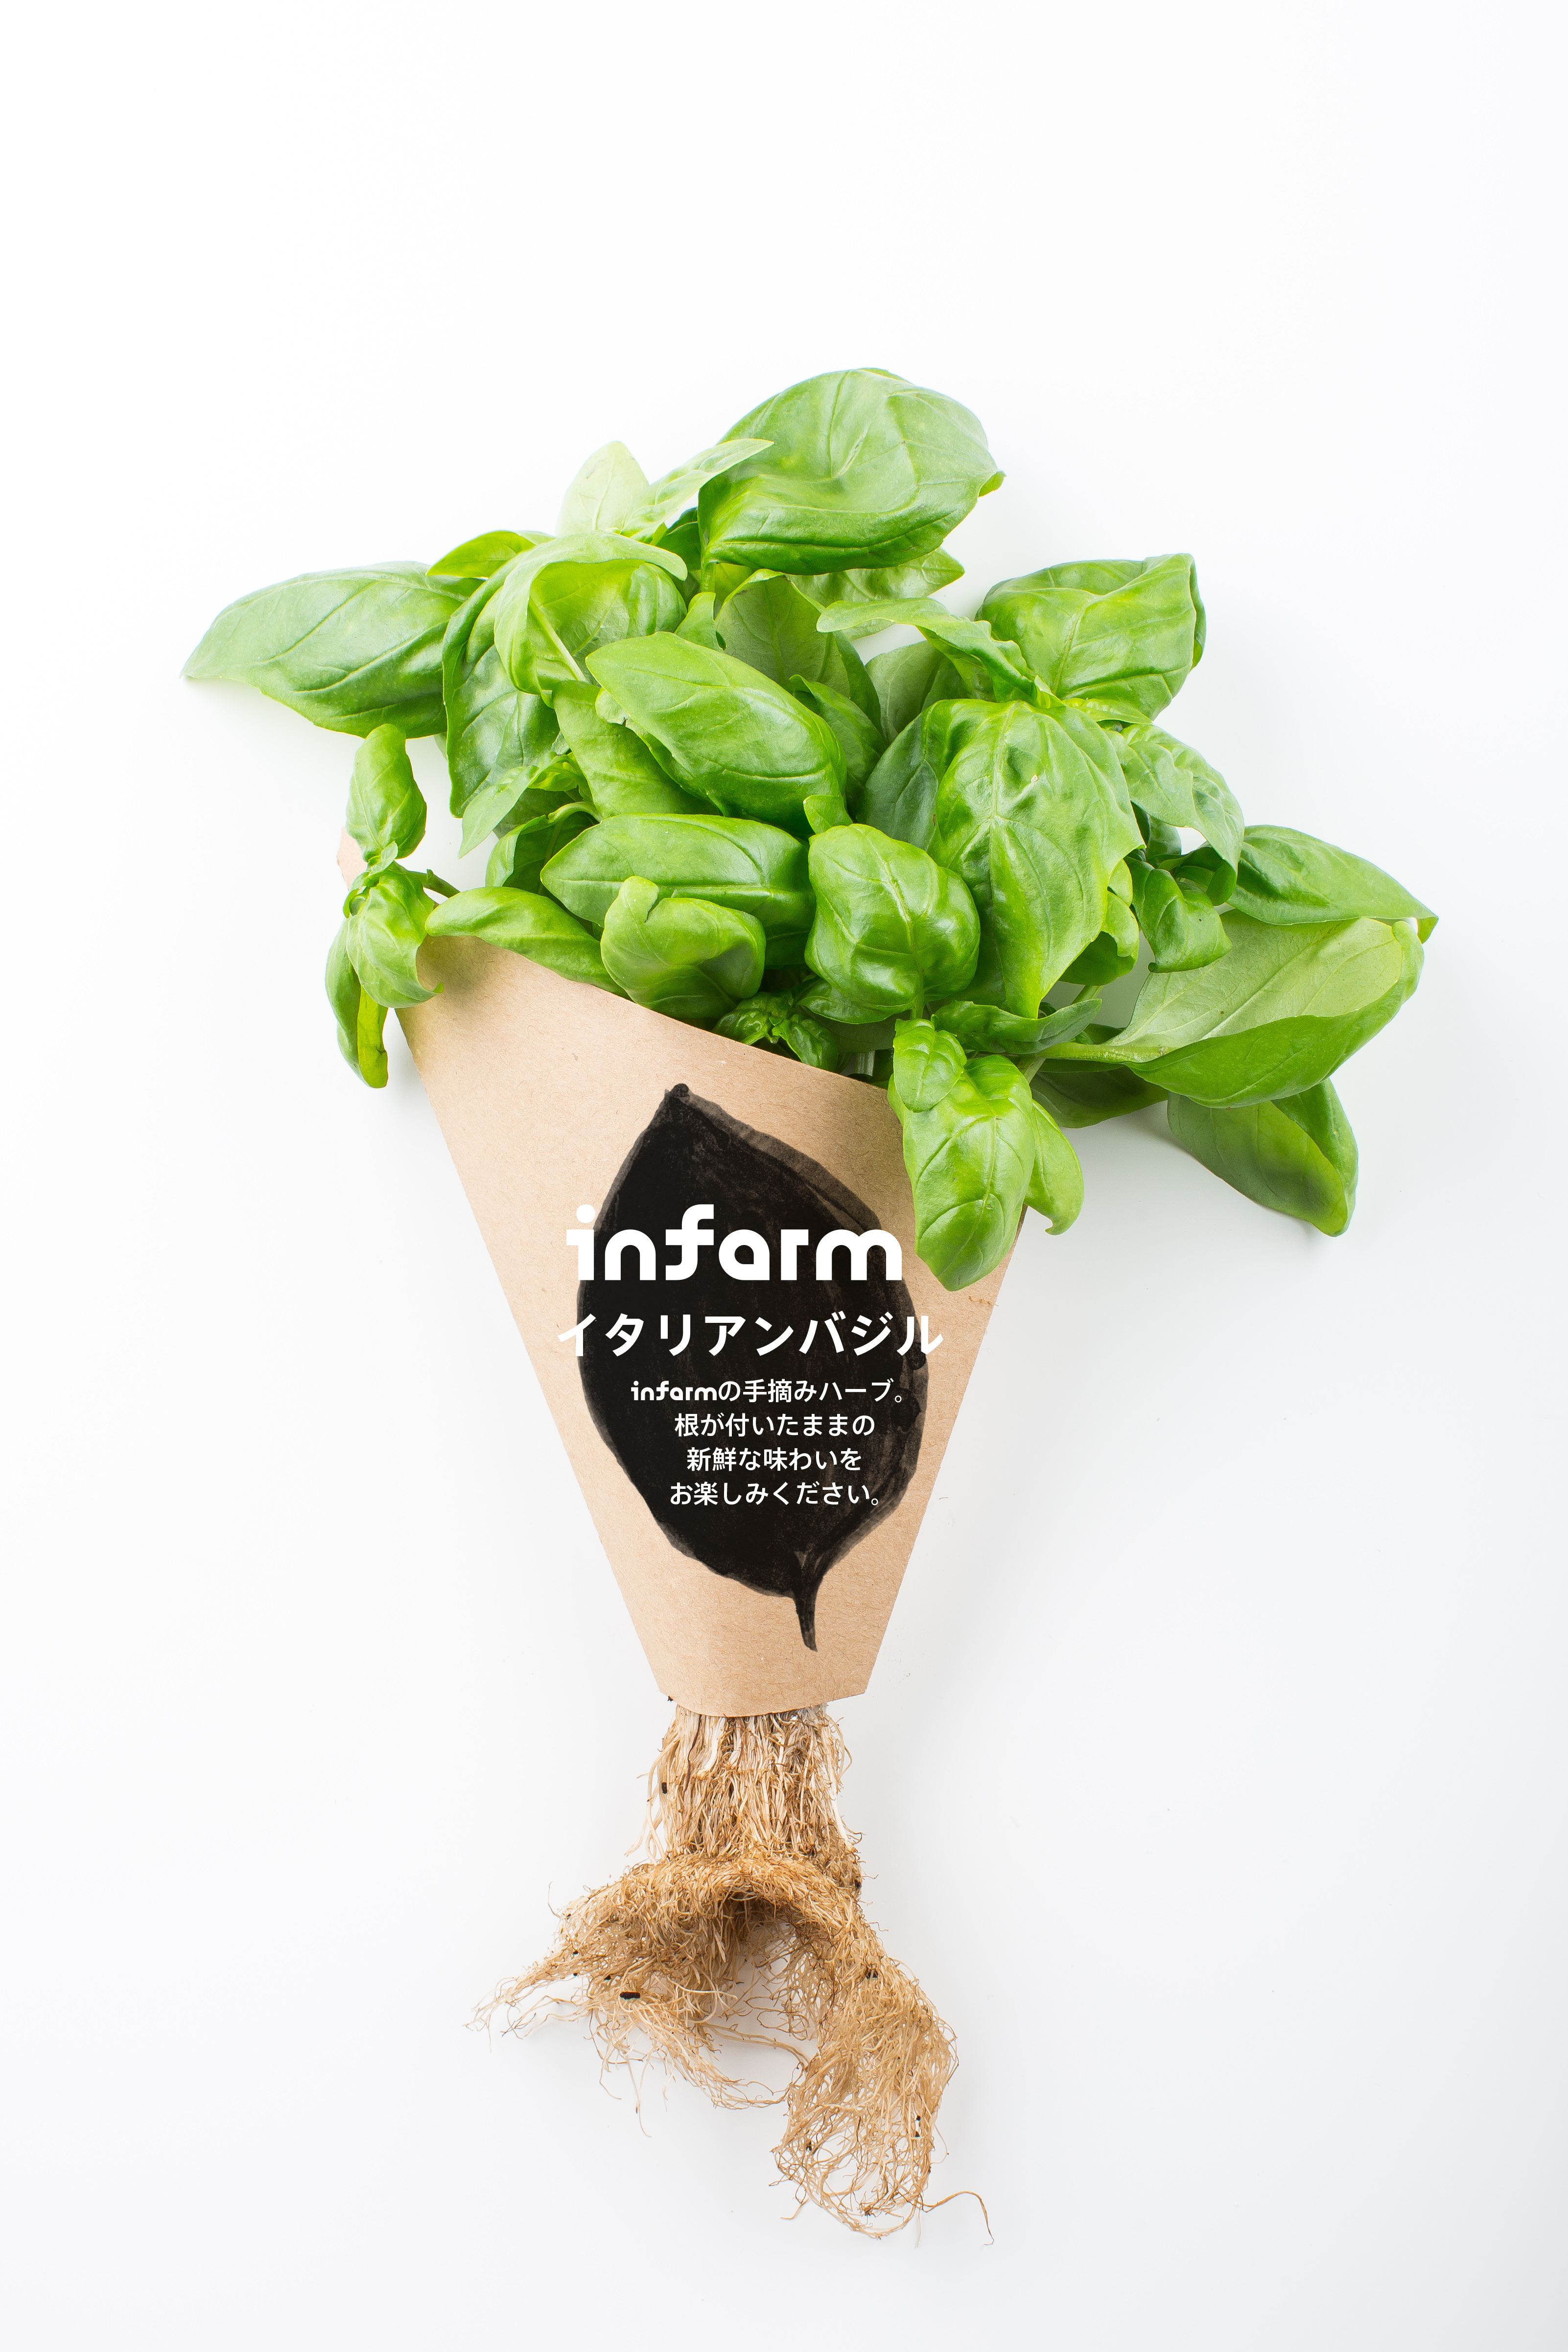 都市型農場野菜 Infarm インファーム 新たに紀ノ国屋国立店での販売が決定 2種のサラダブースターとイタリアンバジルを展開 Infarm Indoor Urban Farming Japan 株式会社のプレスリリース